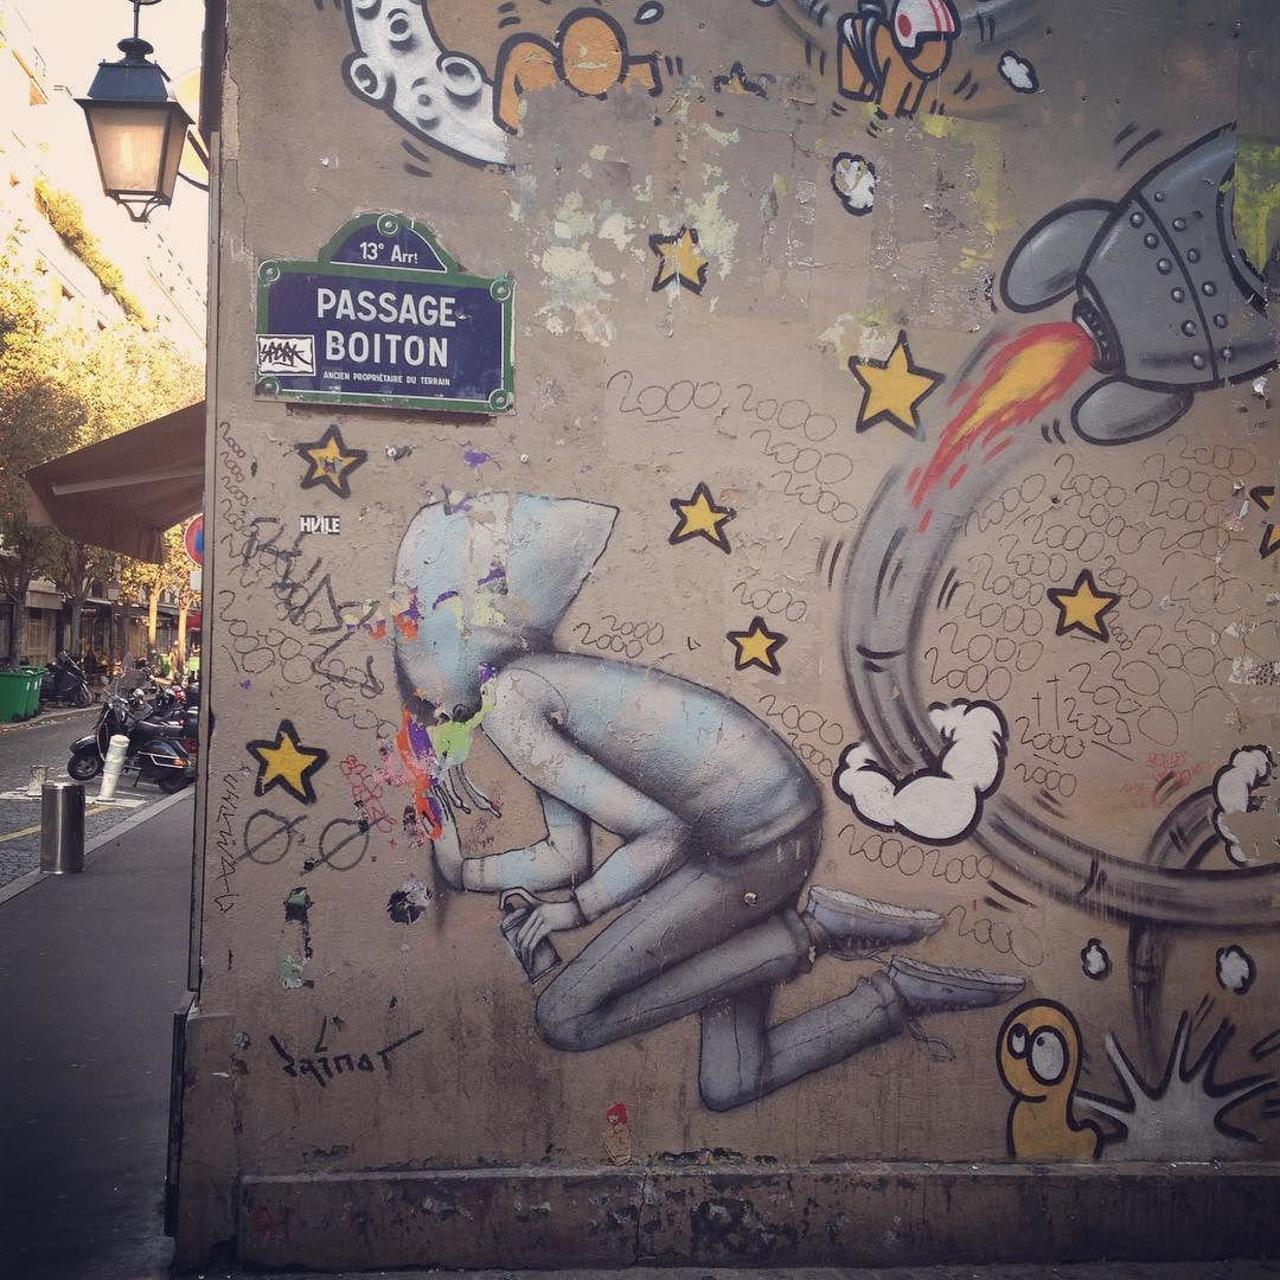 RT @circumjacent_fr: #Paris #graffiti photo by @camontazparis http://ift.tt/1OAaEqR #StreetArt http://t.co/G7cpPgYWHl